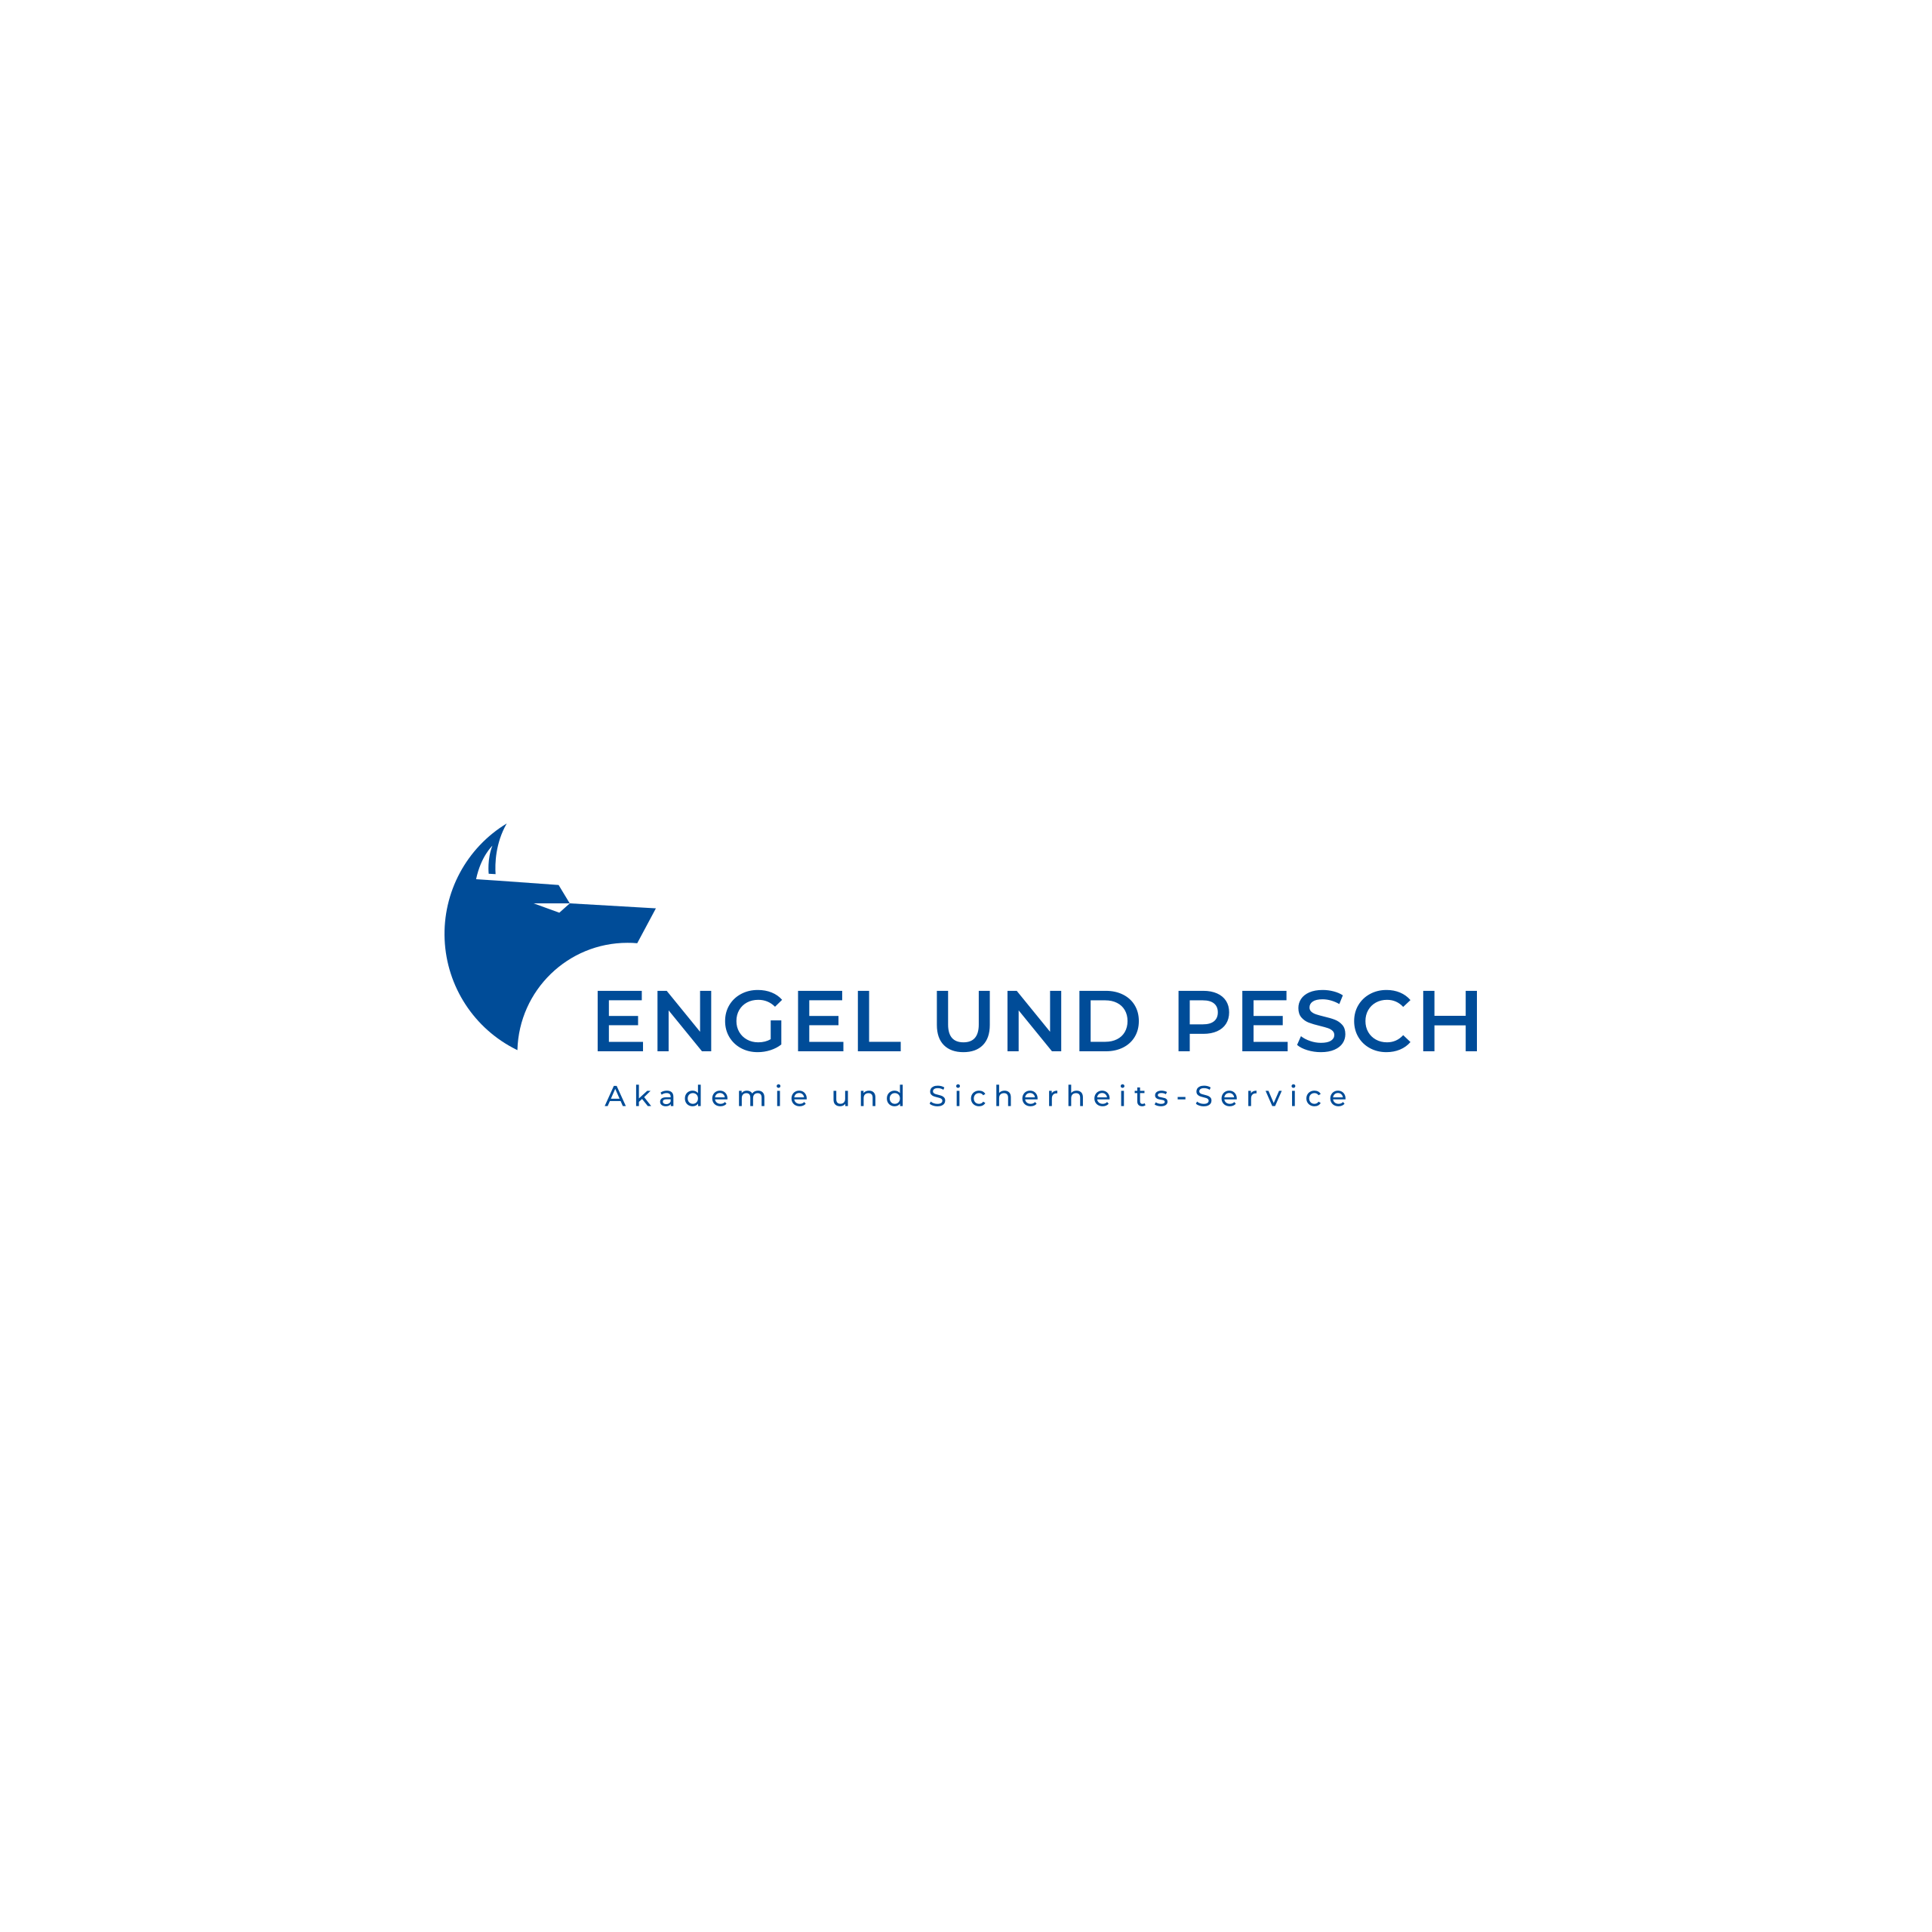 Engel und Pesch GmbH in Mönchengladbach - Logo